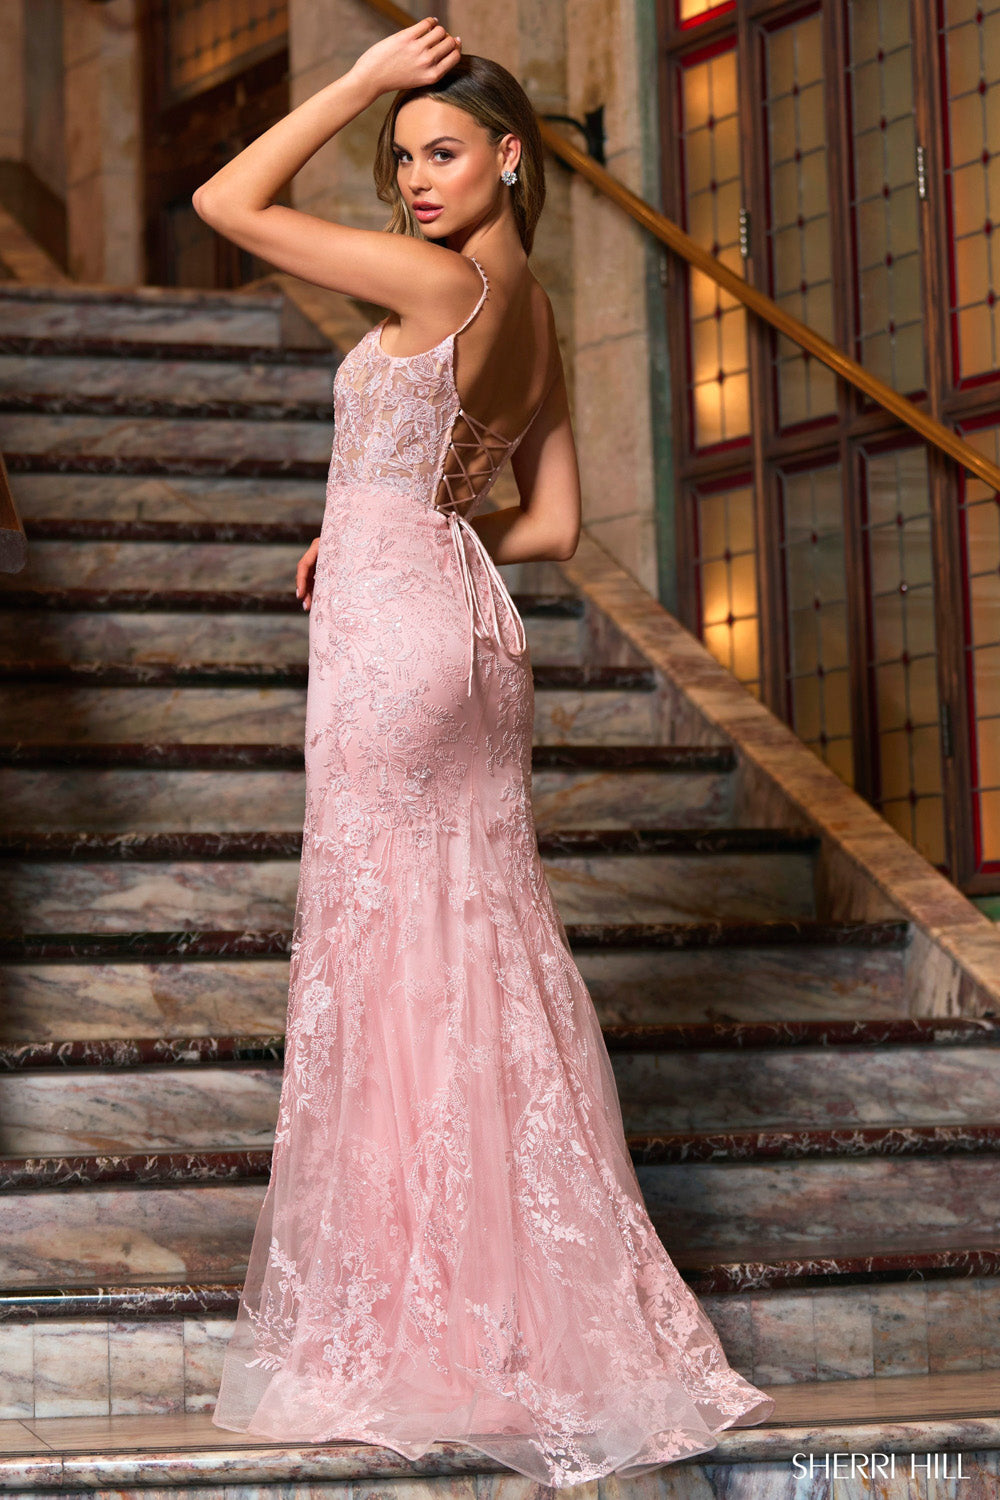 Pink Prom Dresses,Hot Pink Formal Dresses